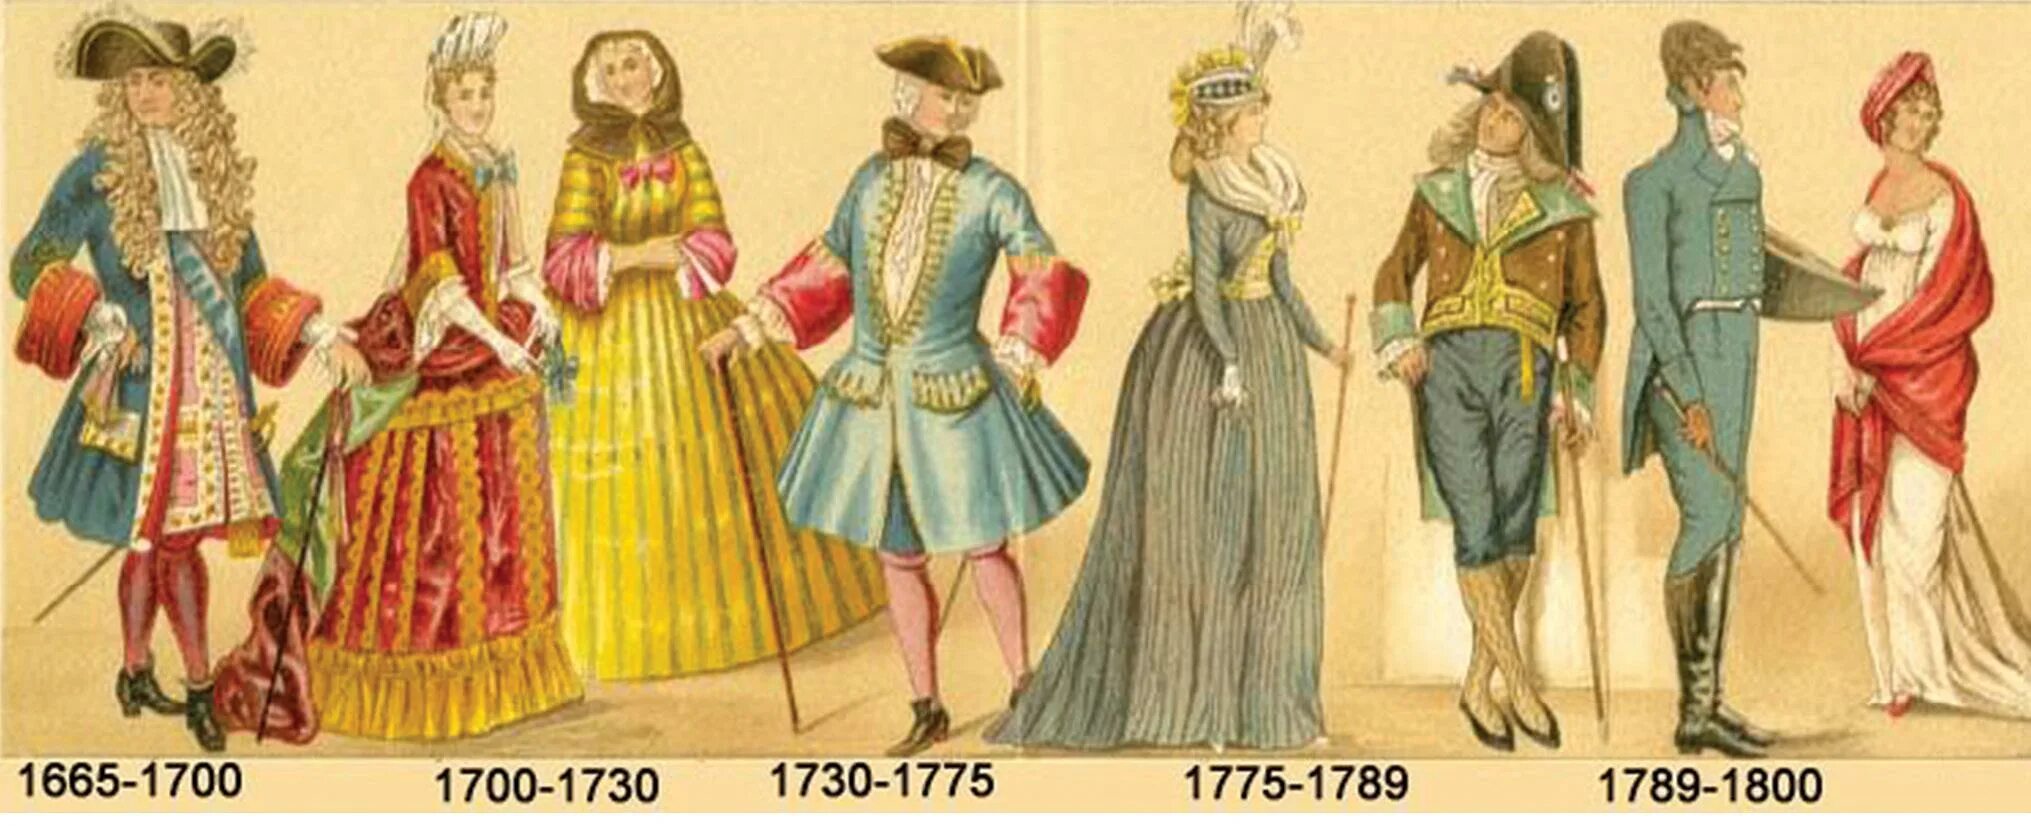 1700 19. Костюм французской аристократии 17-18 века. Европейская одежда 17 века 18 века. Одежда дворян 17 века в Европе. Мода европейцев 17 18 век.